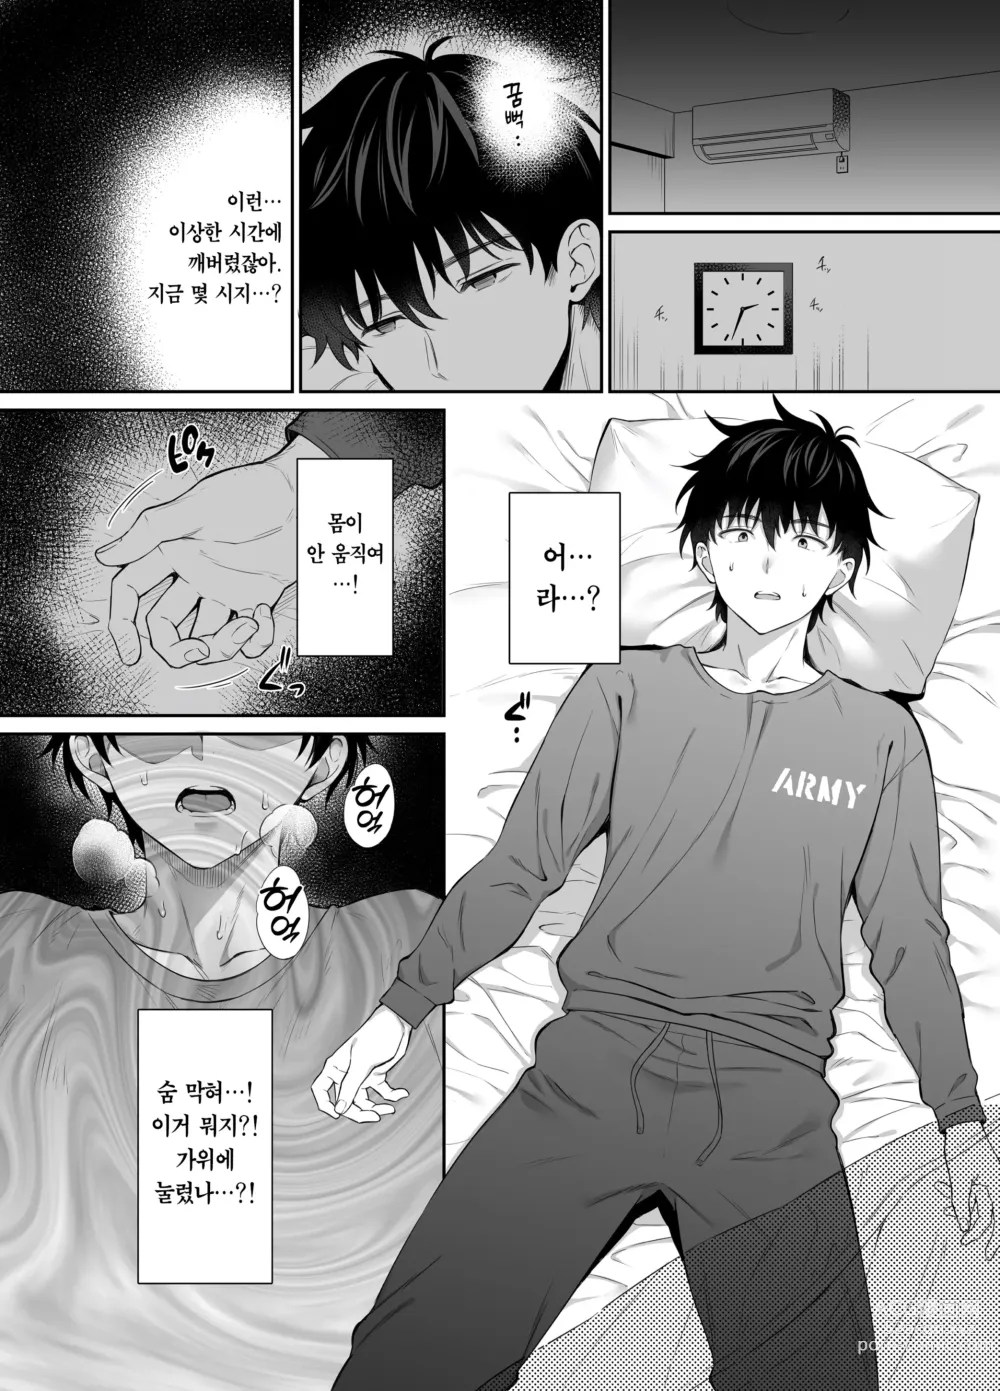 Page 9 of doujinshi 폐허에서 지뢰녀랑 밤새 질내사정 섹스한 이야기 2 (decensored)